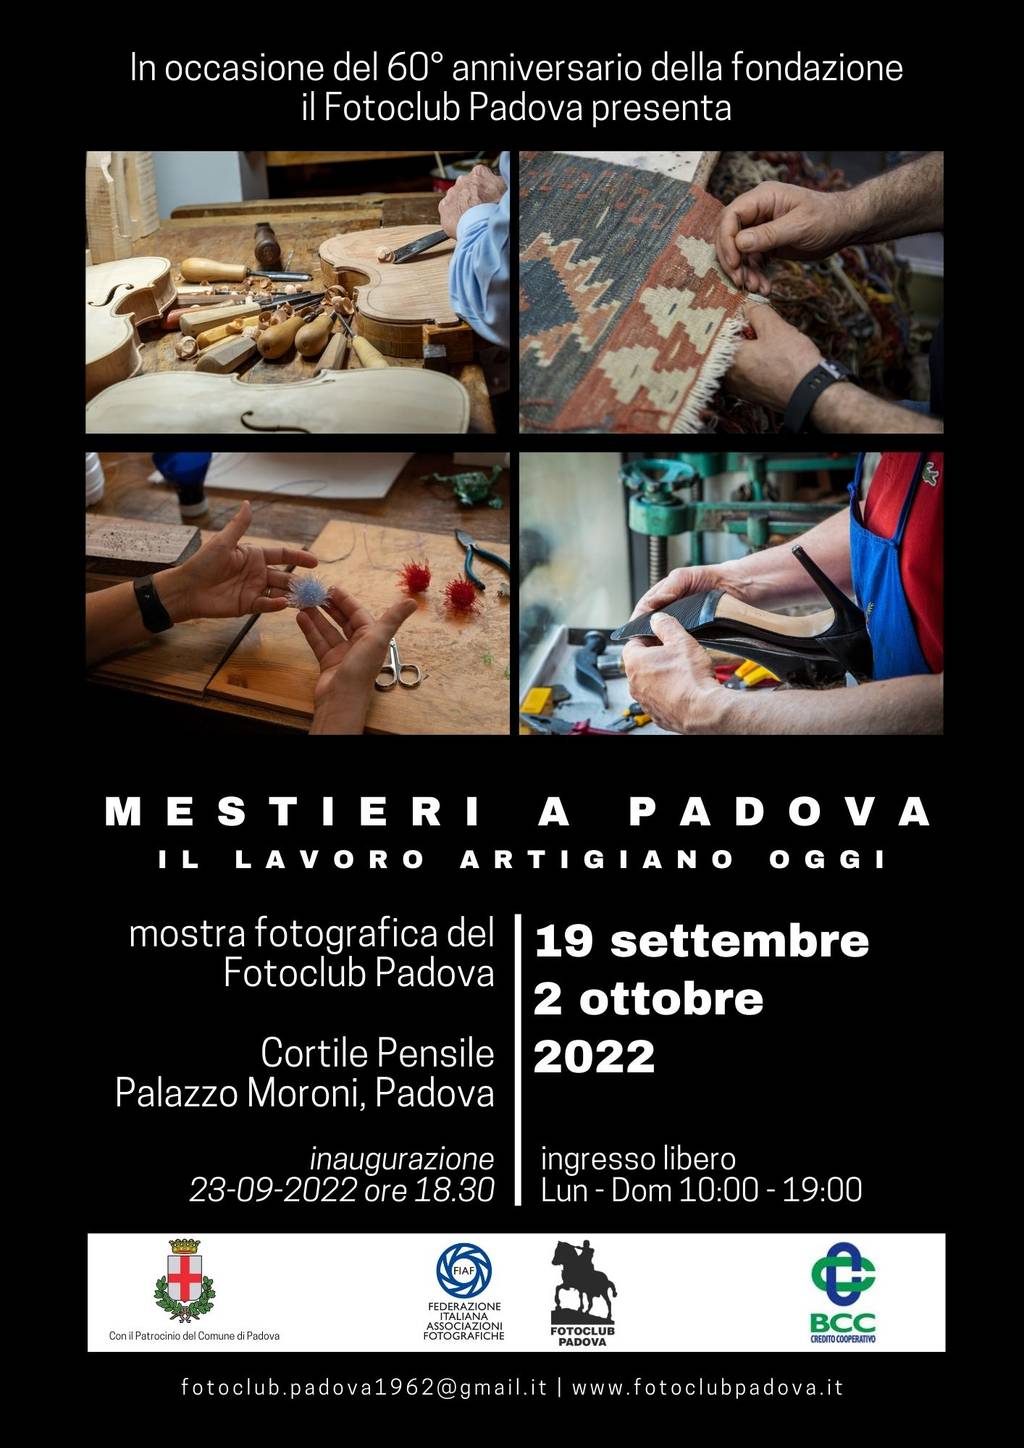 MESTIERI A PADOVA – il lavoro artigiano oggi